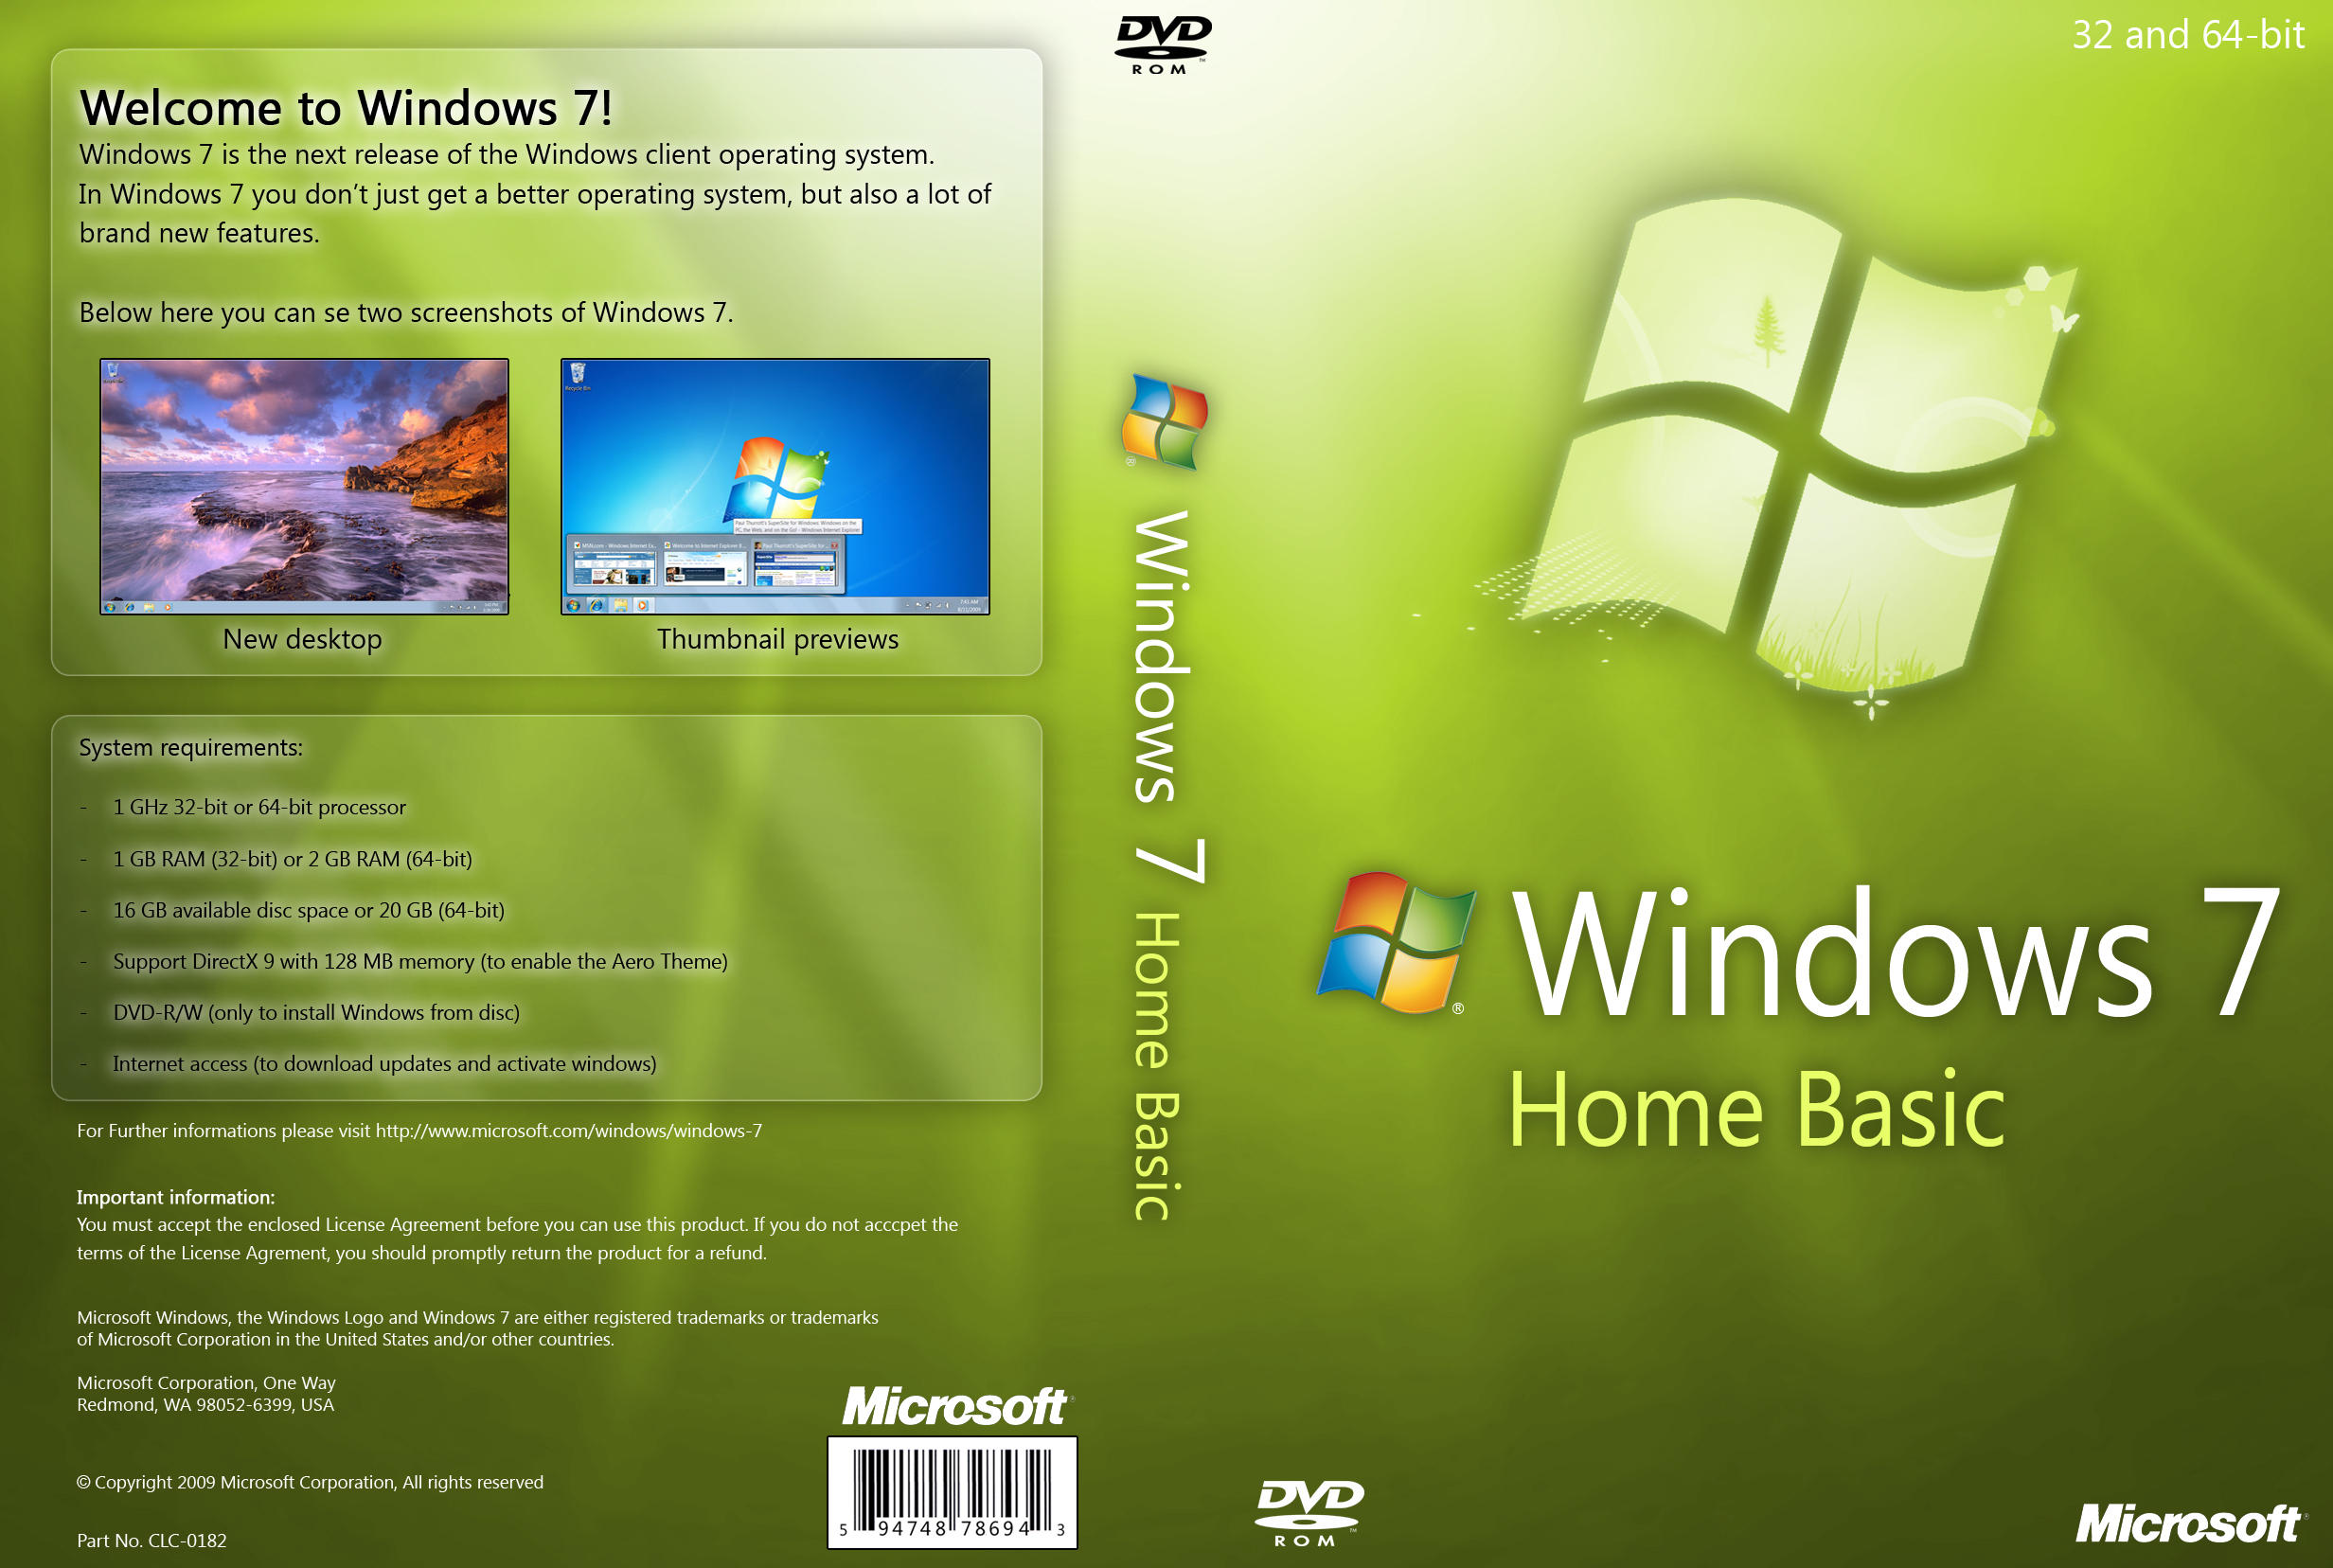 Windows 8 enterprise evaluation build 9200 16